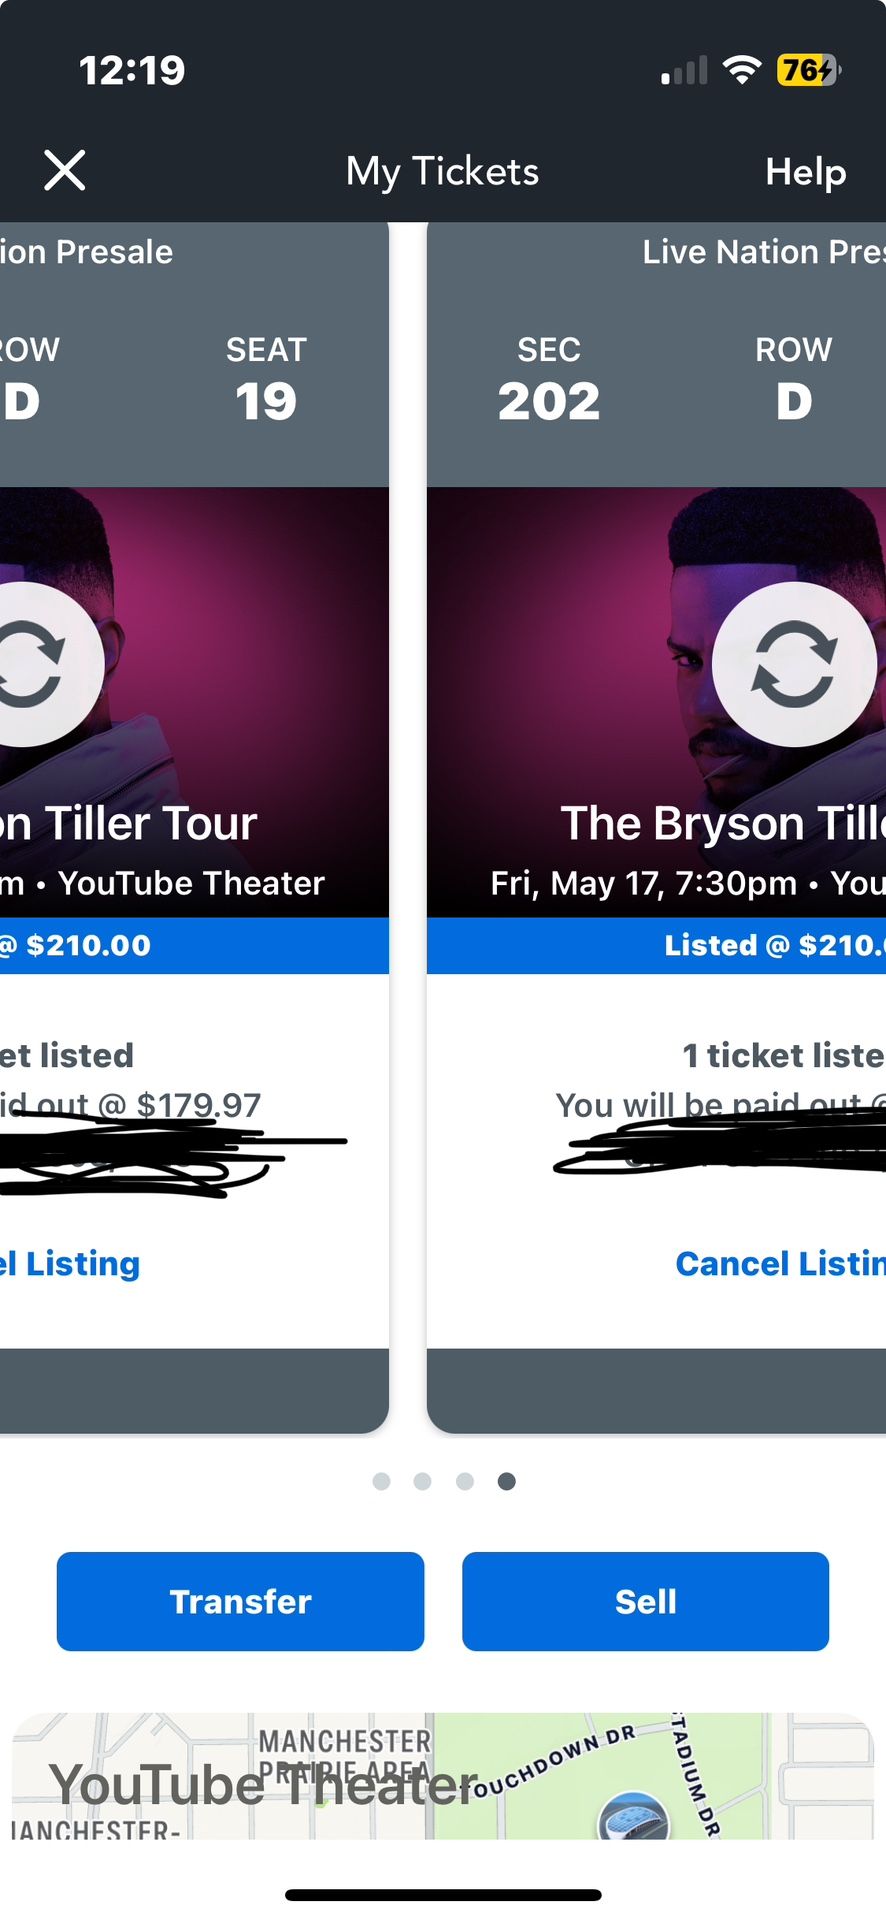 Bryson Tiller Concert LA 5/17